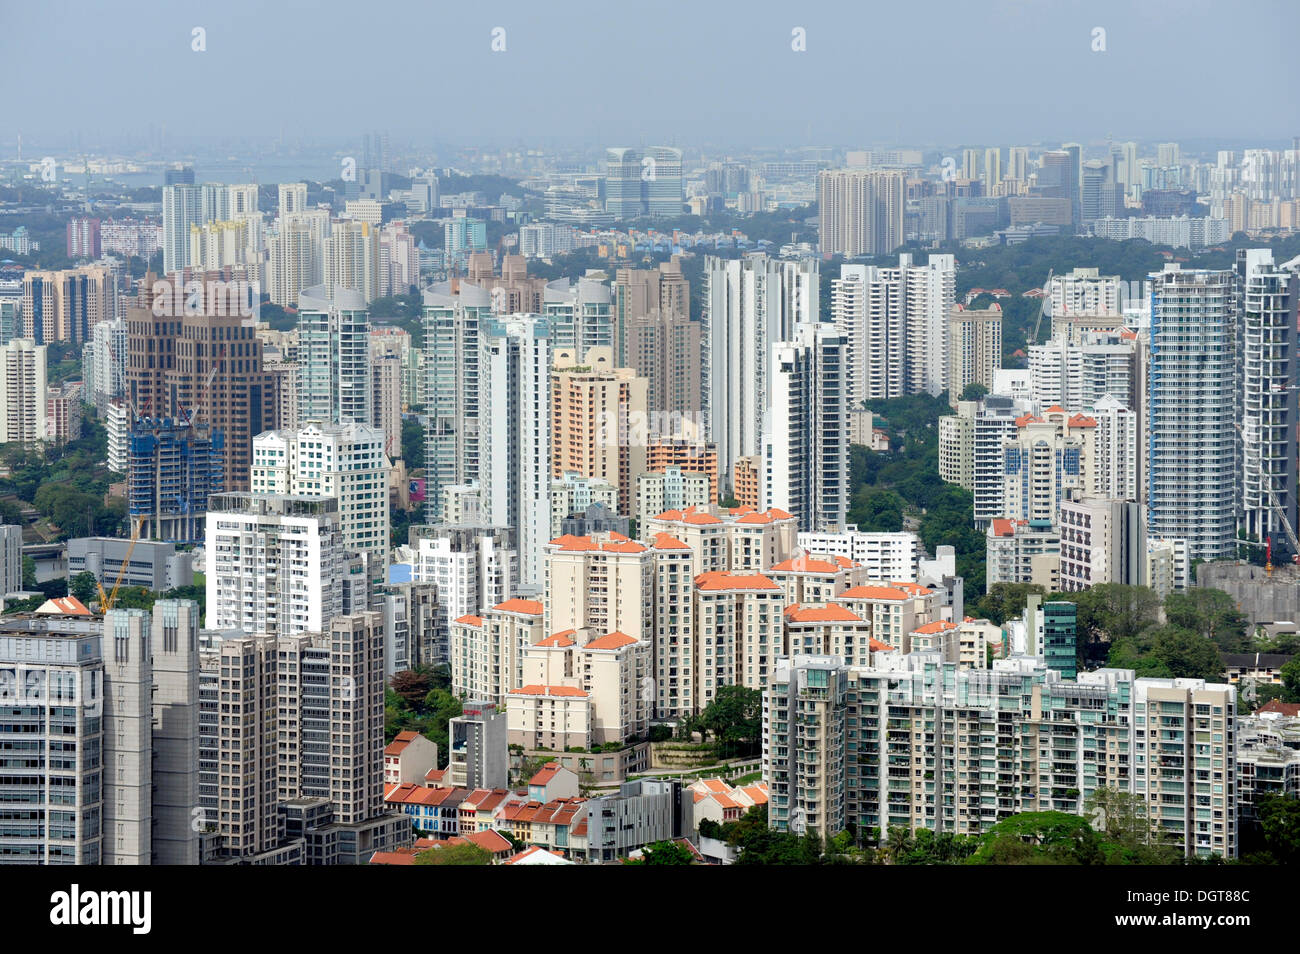 Grattacieli e skyline, visto dalla zona centrale, il quartiere centrale degli affari, a Singapore, in Asia Foto Stock